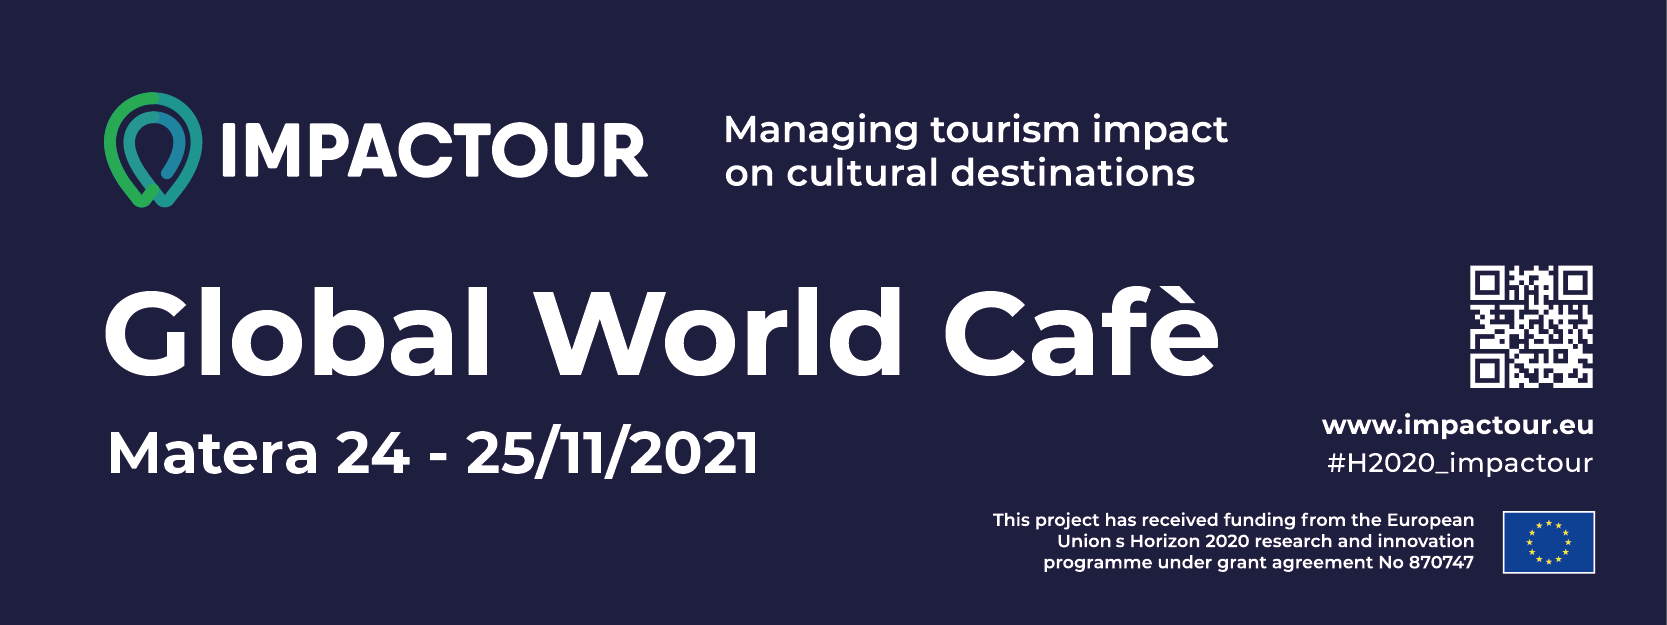 Turismo culturale, il 24 e il 25 Materahub ospita il World Café di Impactour